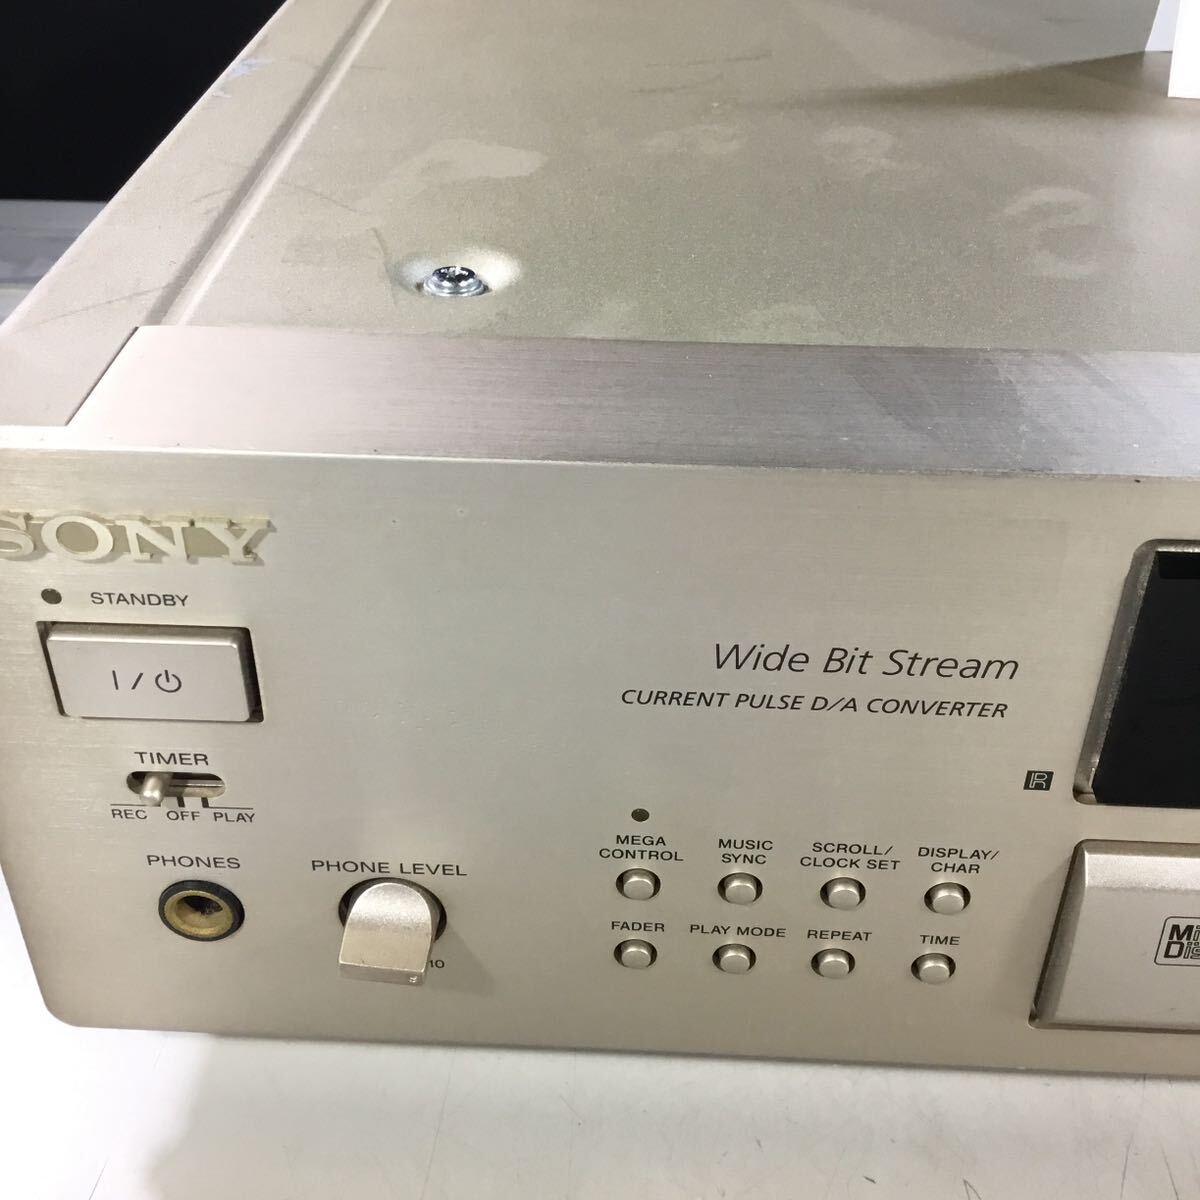 [ free shipping ](051347F) SONY MD deck MD recorder MDC-JB920 junk 